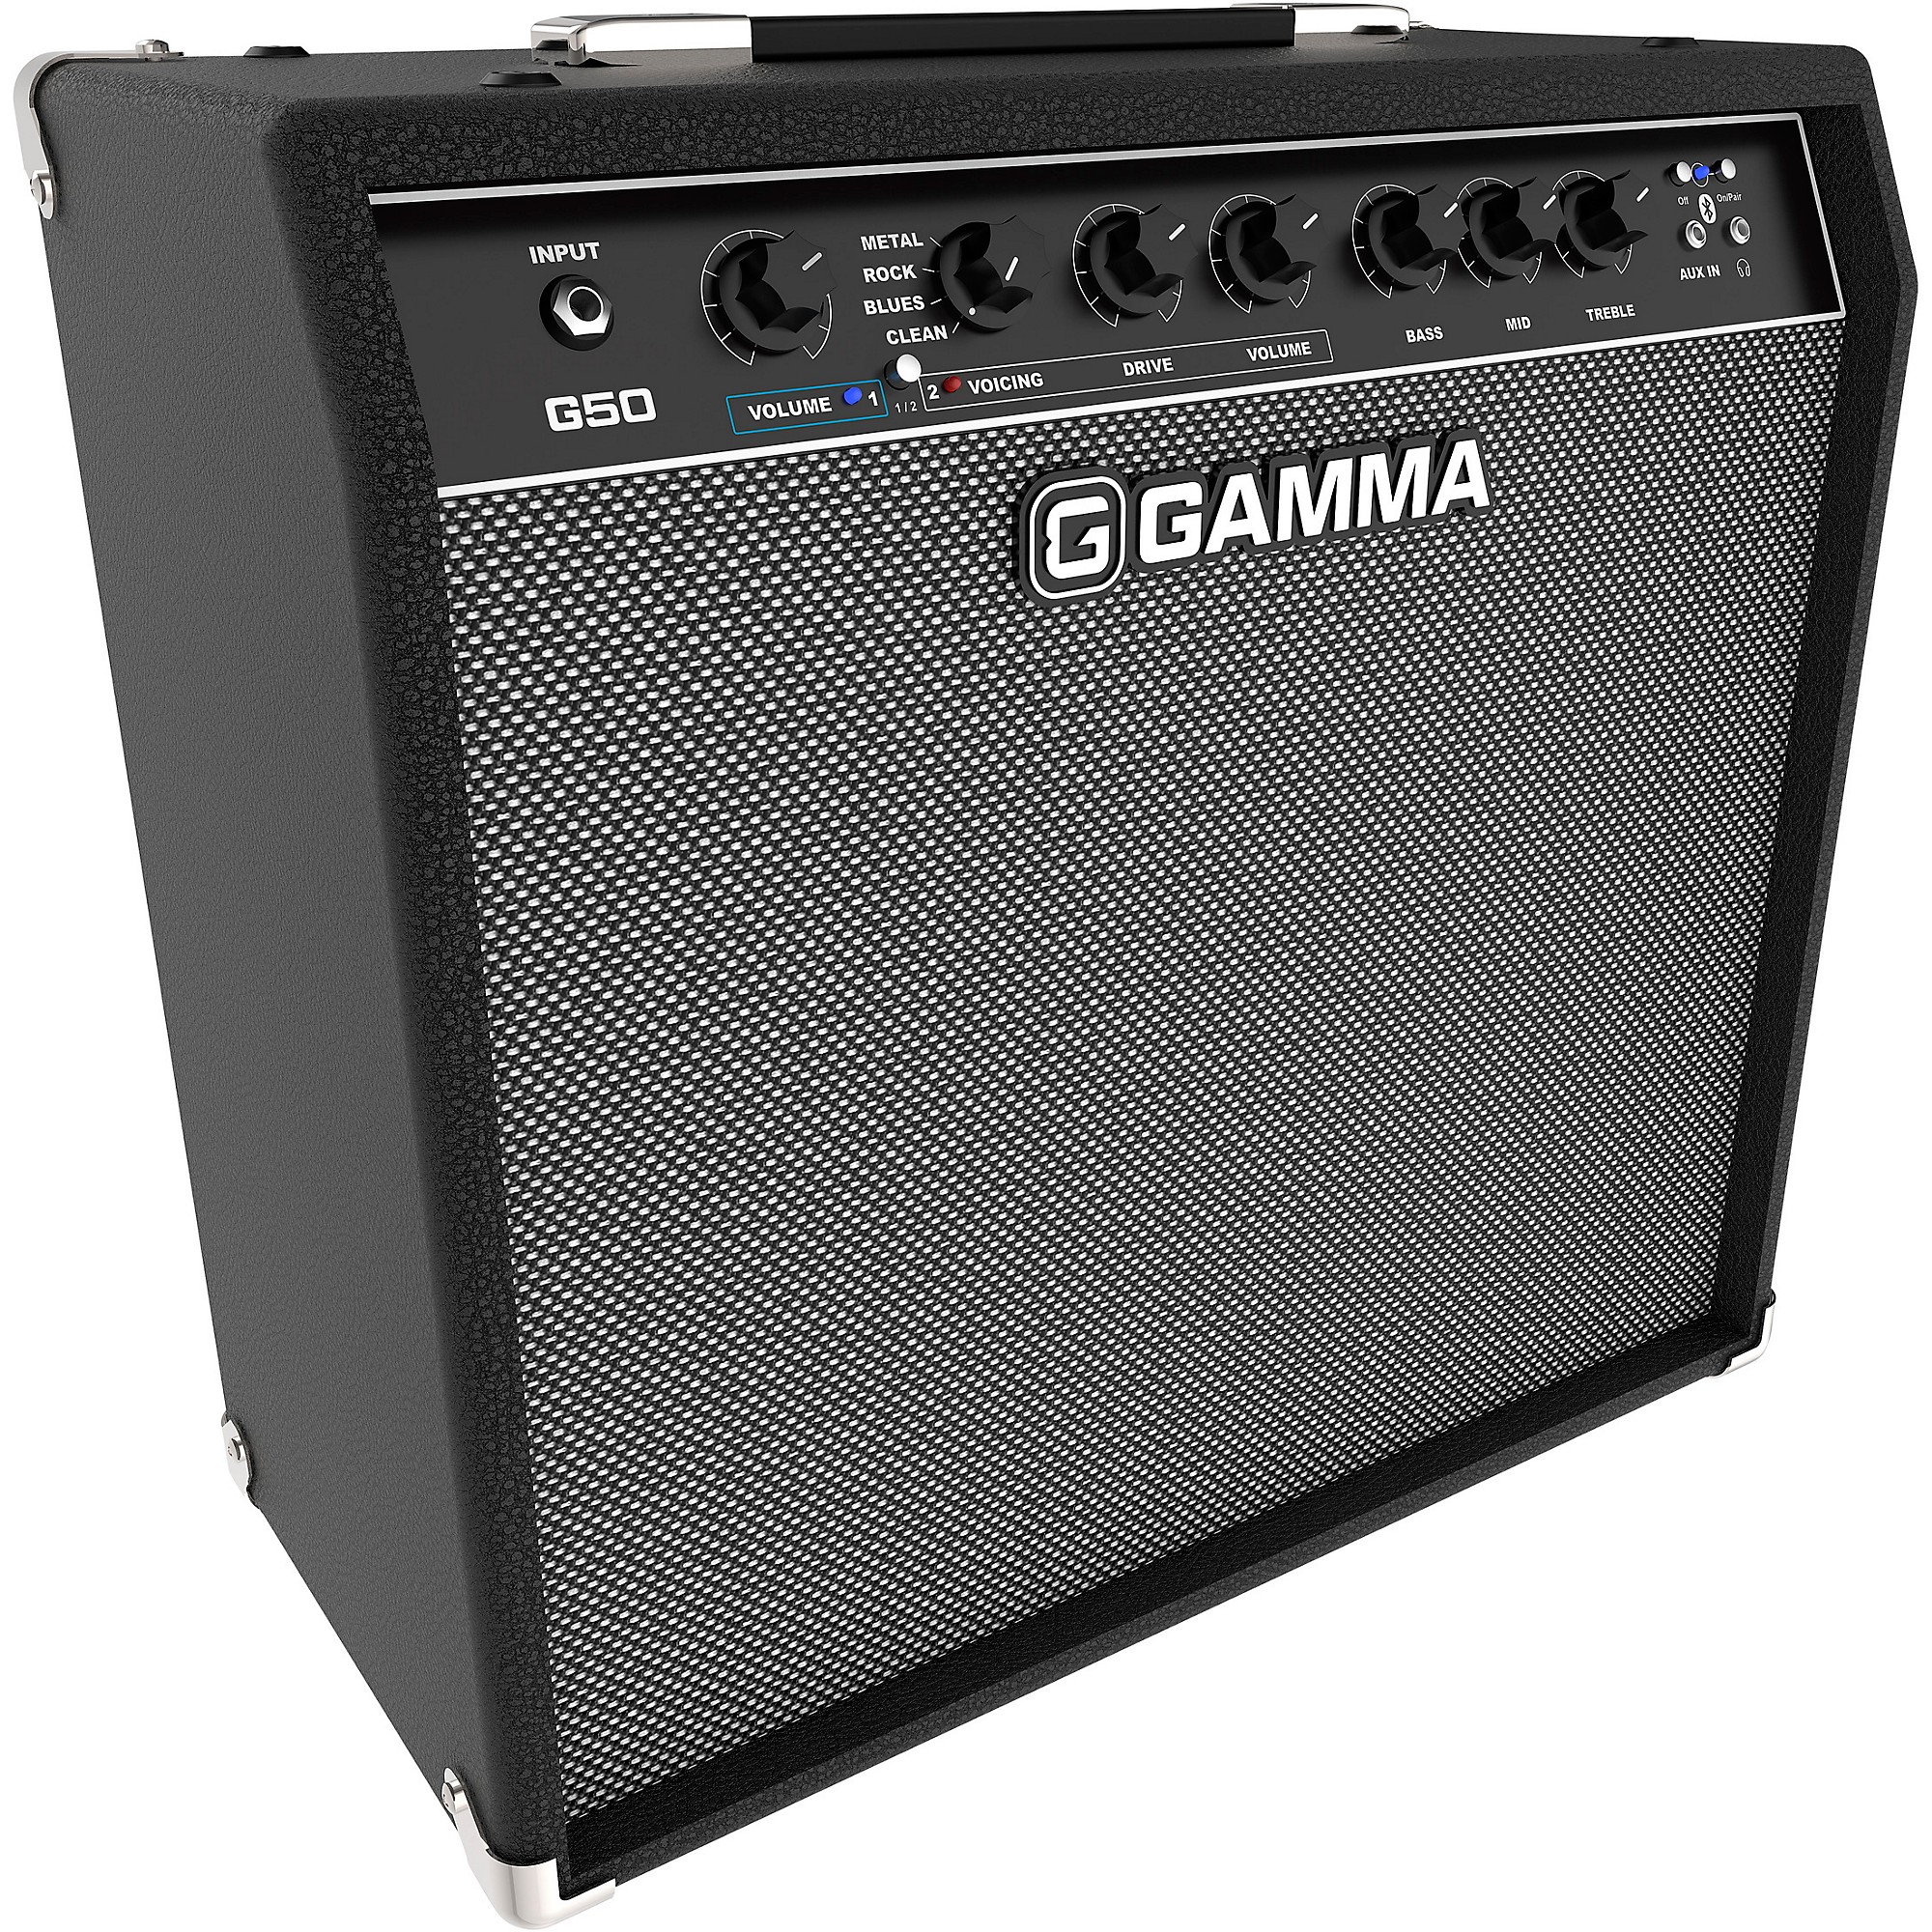 Overtuiging had het niet door In zicht GAMMA G50 50W 1x12 Guitar Combo Amplifier | Guitar Center